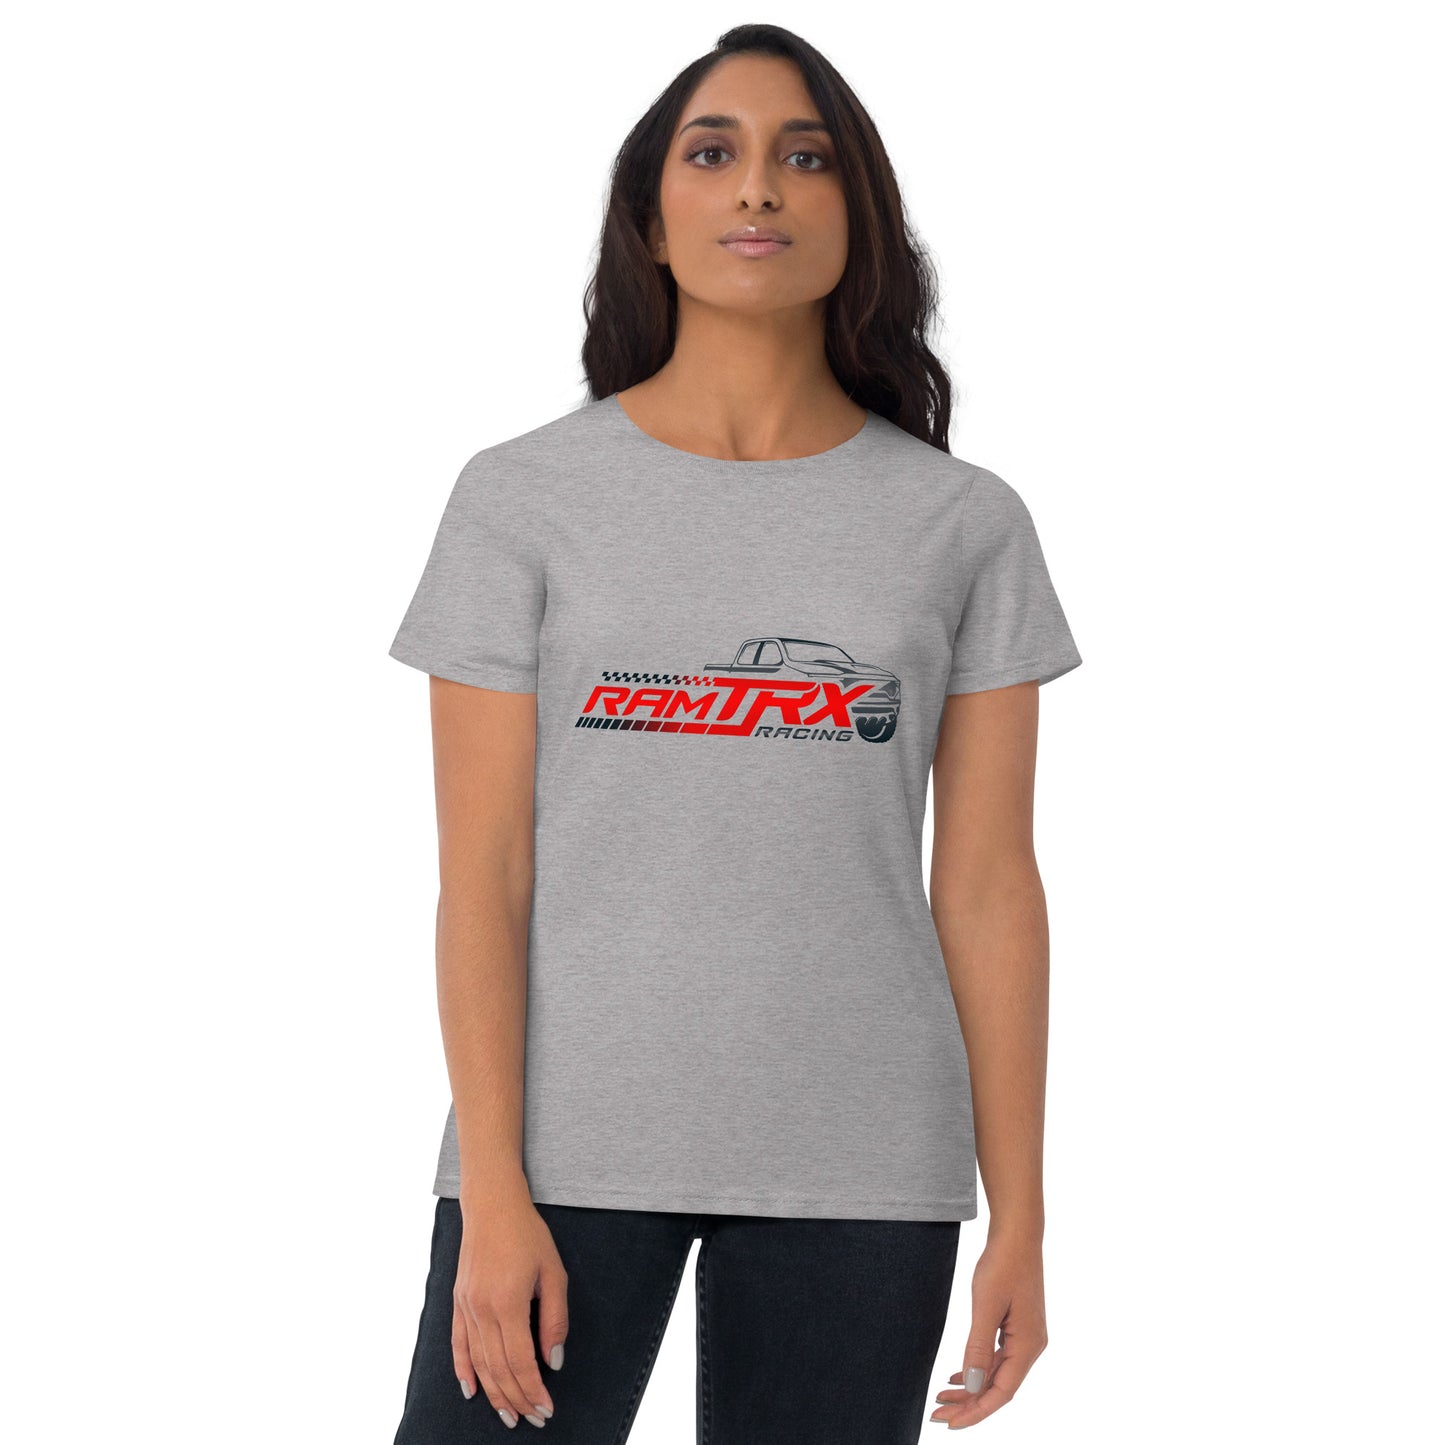 Women's Ram TRX Racing short sleeve t-shirt